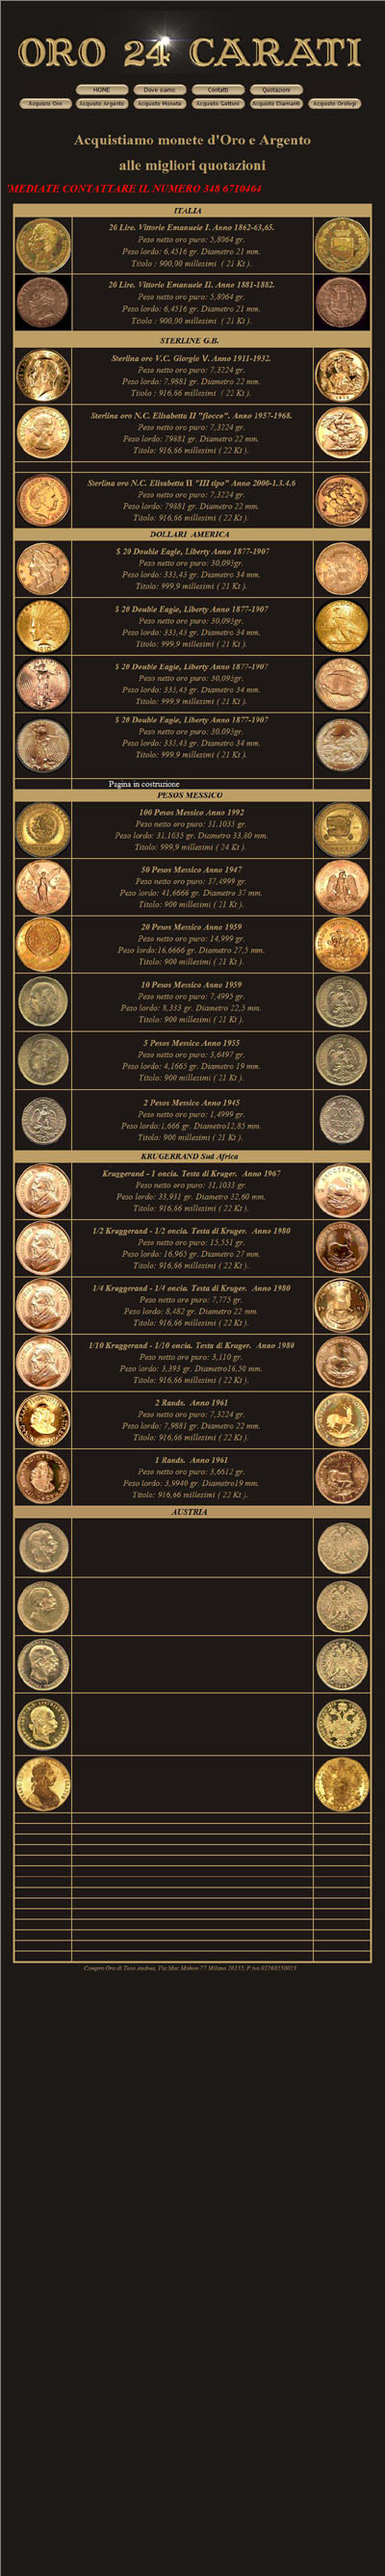 Oro 24 Carati Andrea Toso (oro24carati.com)'s Monete Oro Gold Coins Page